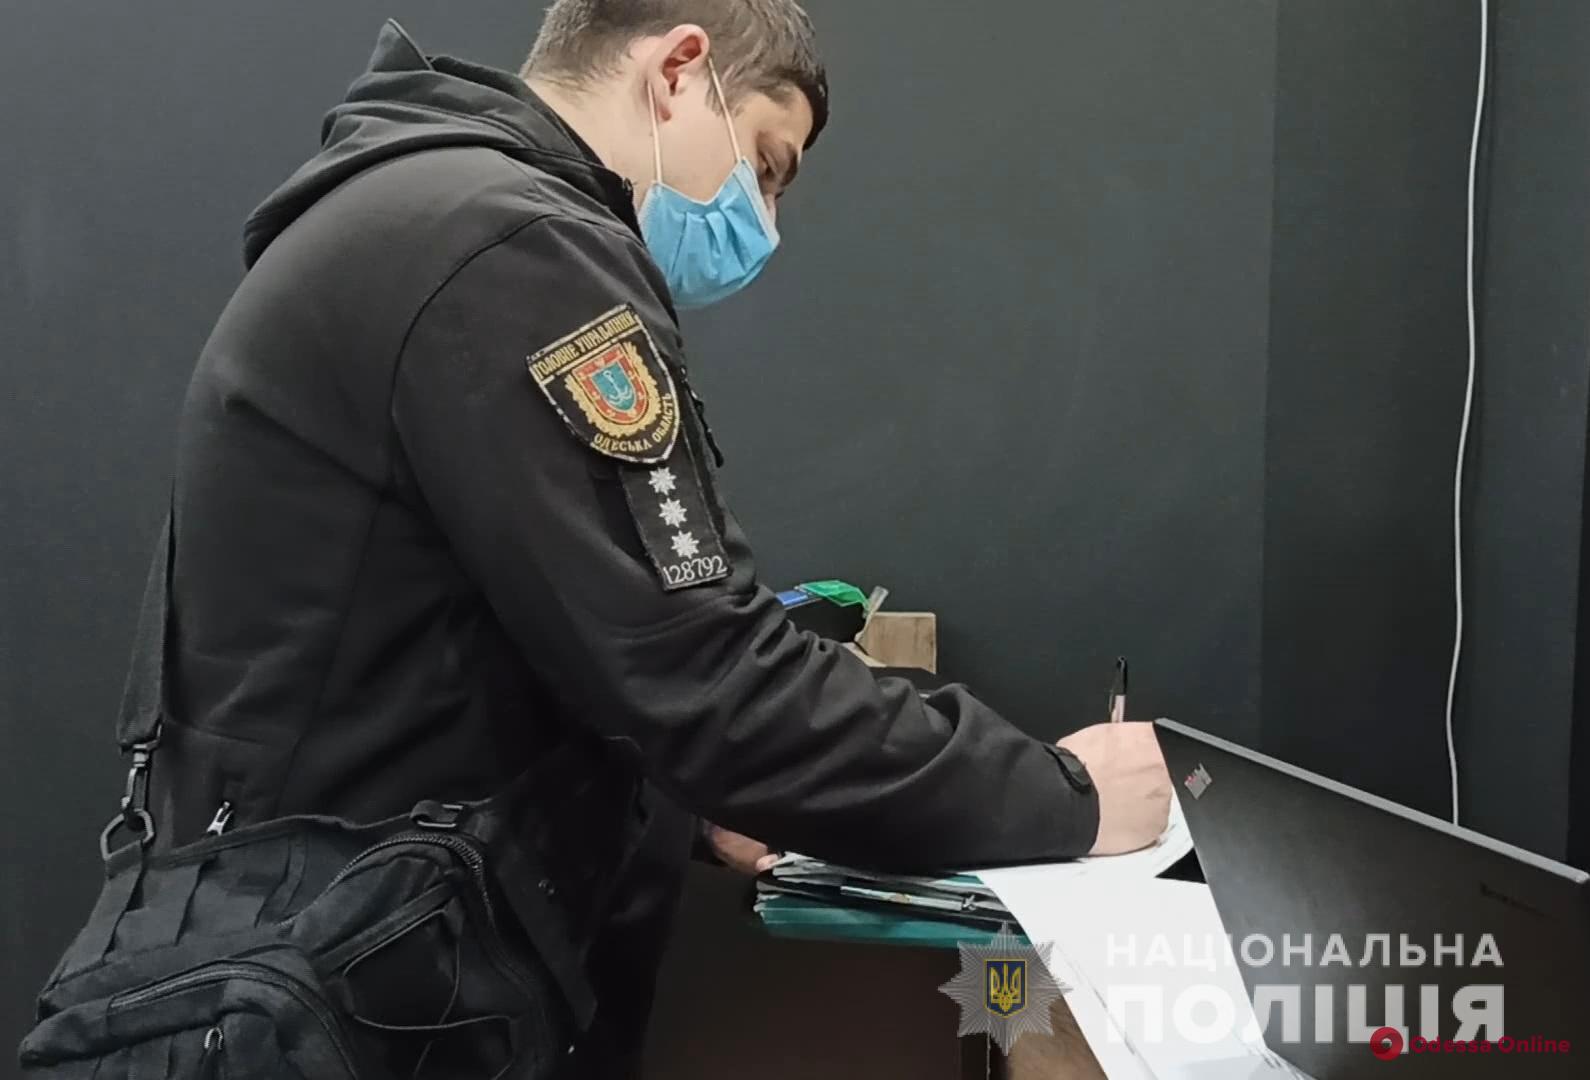 Одесская область: за неделю мобильные группы составили более 670 админпротоколов на нарушителей карантина